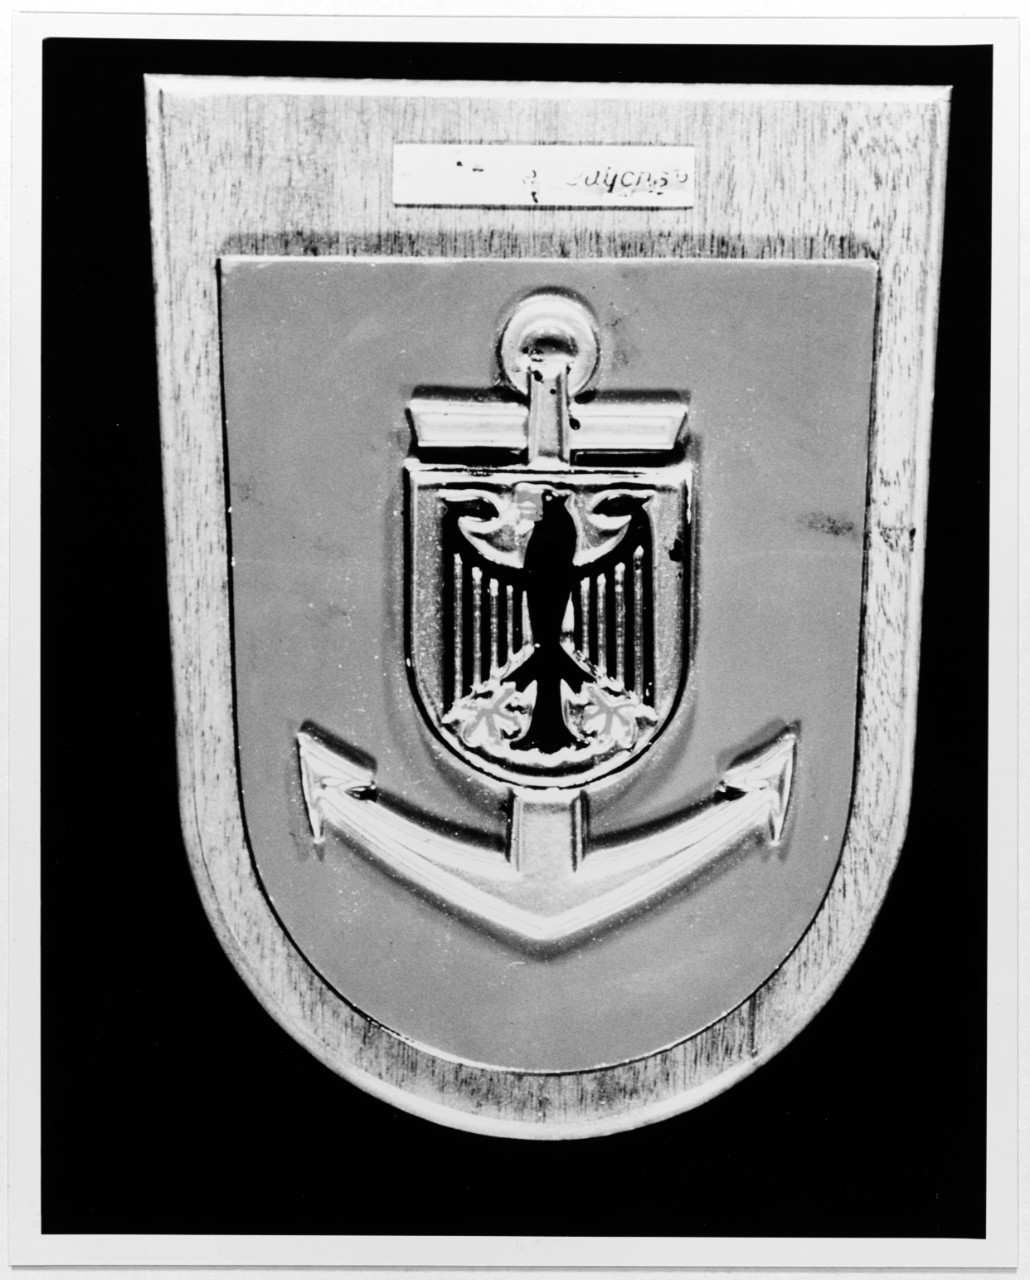 Insignia: LUTJENS (German destroyer, 1968)